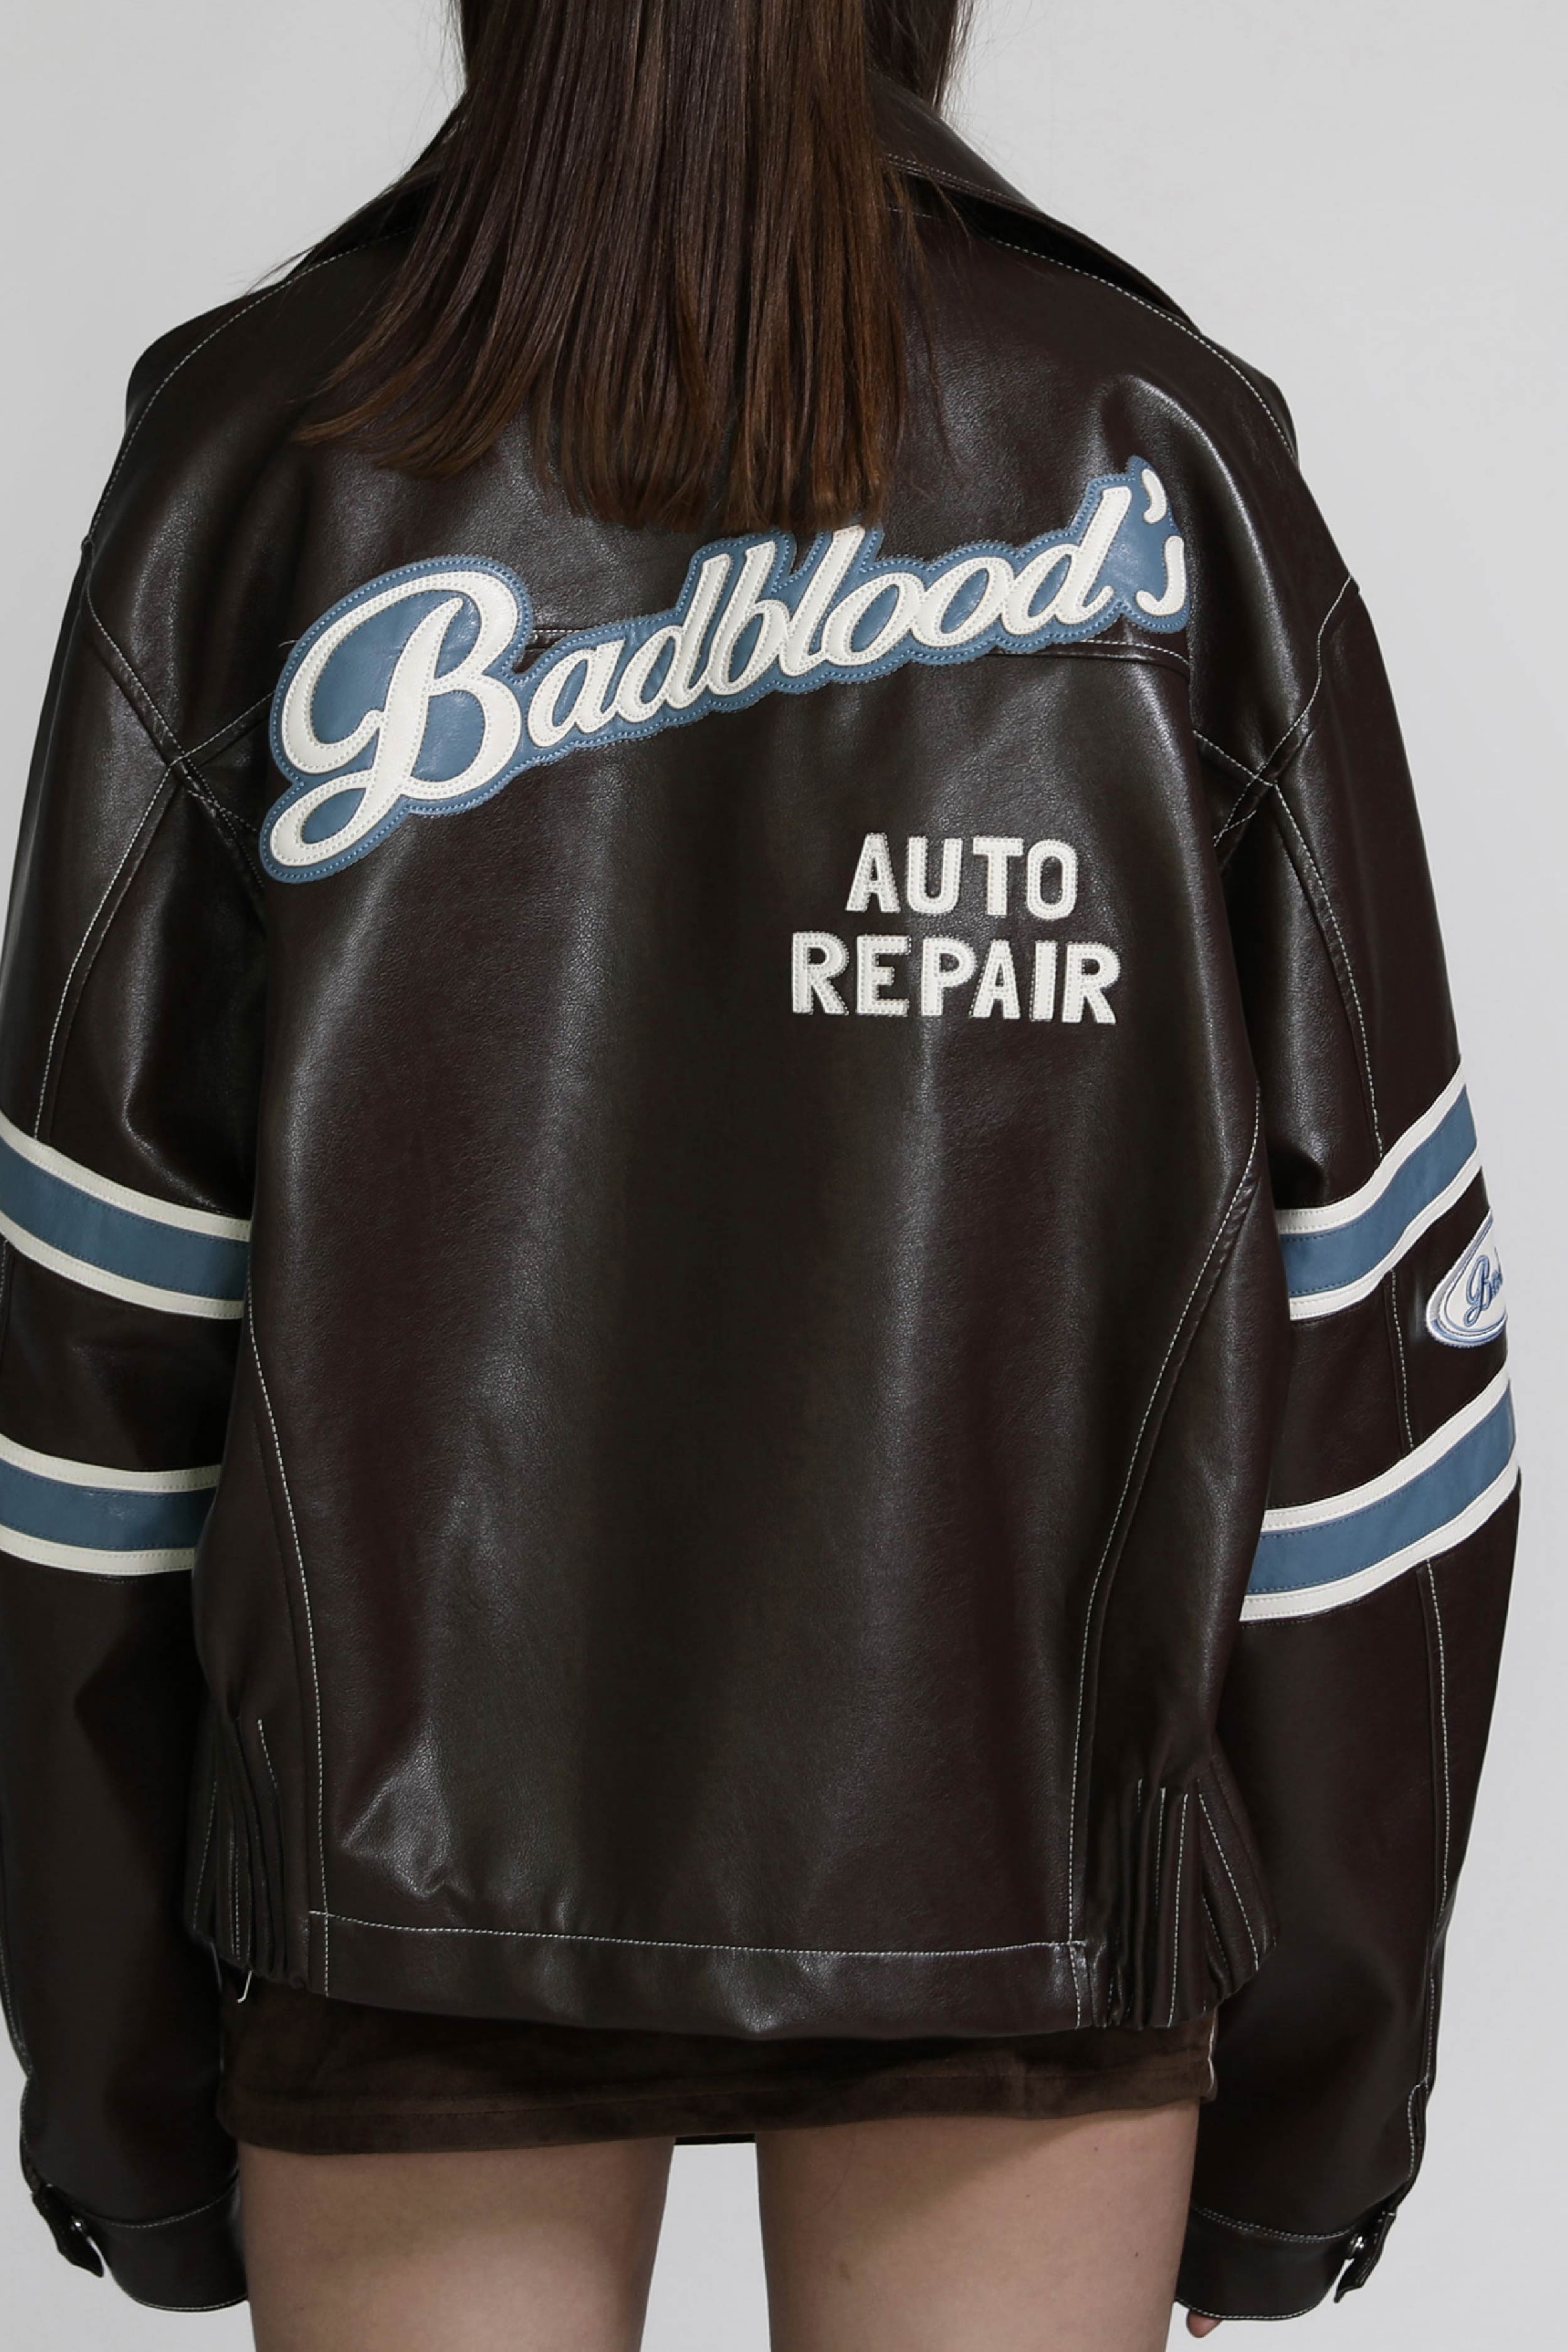 Badblood 91 Leather Varsity Jacket Brown